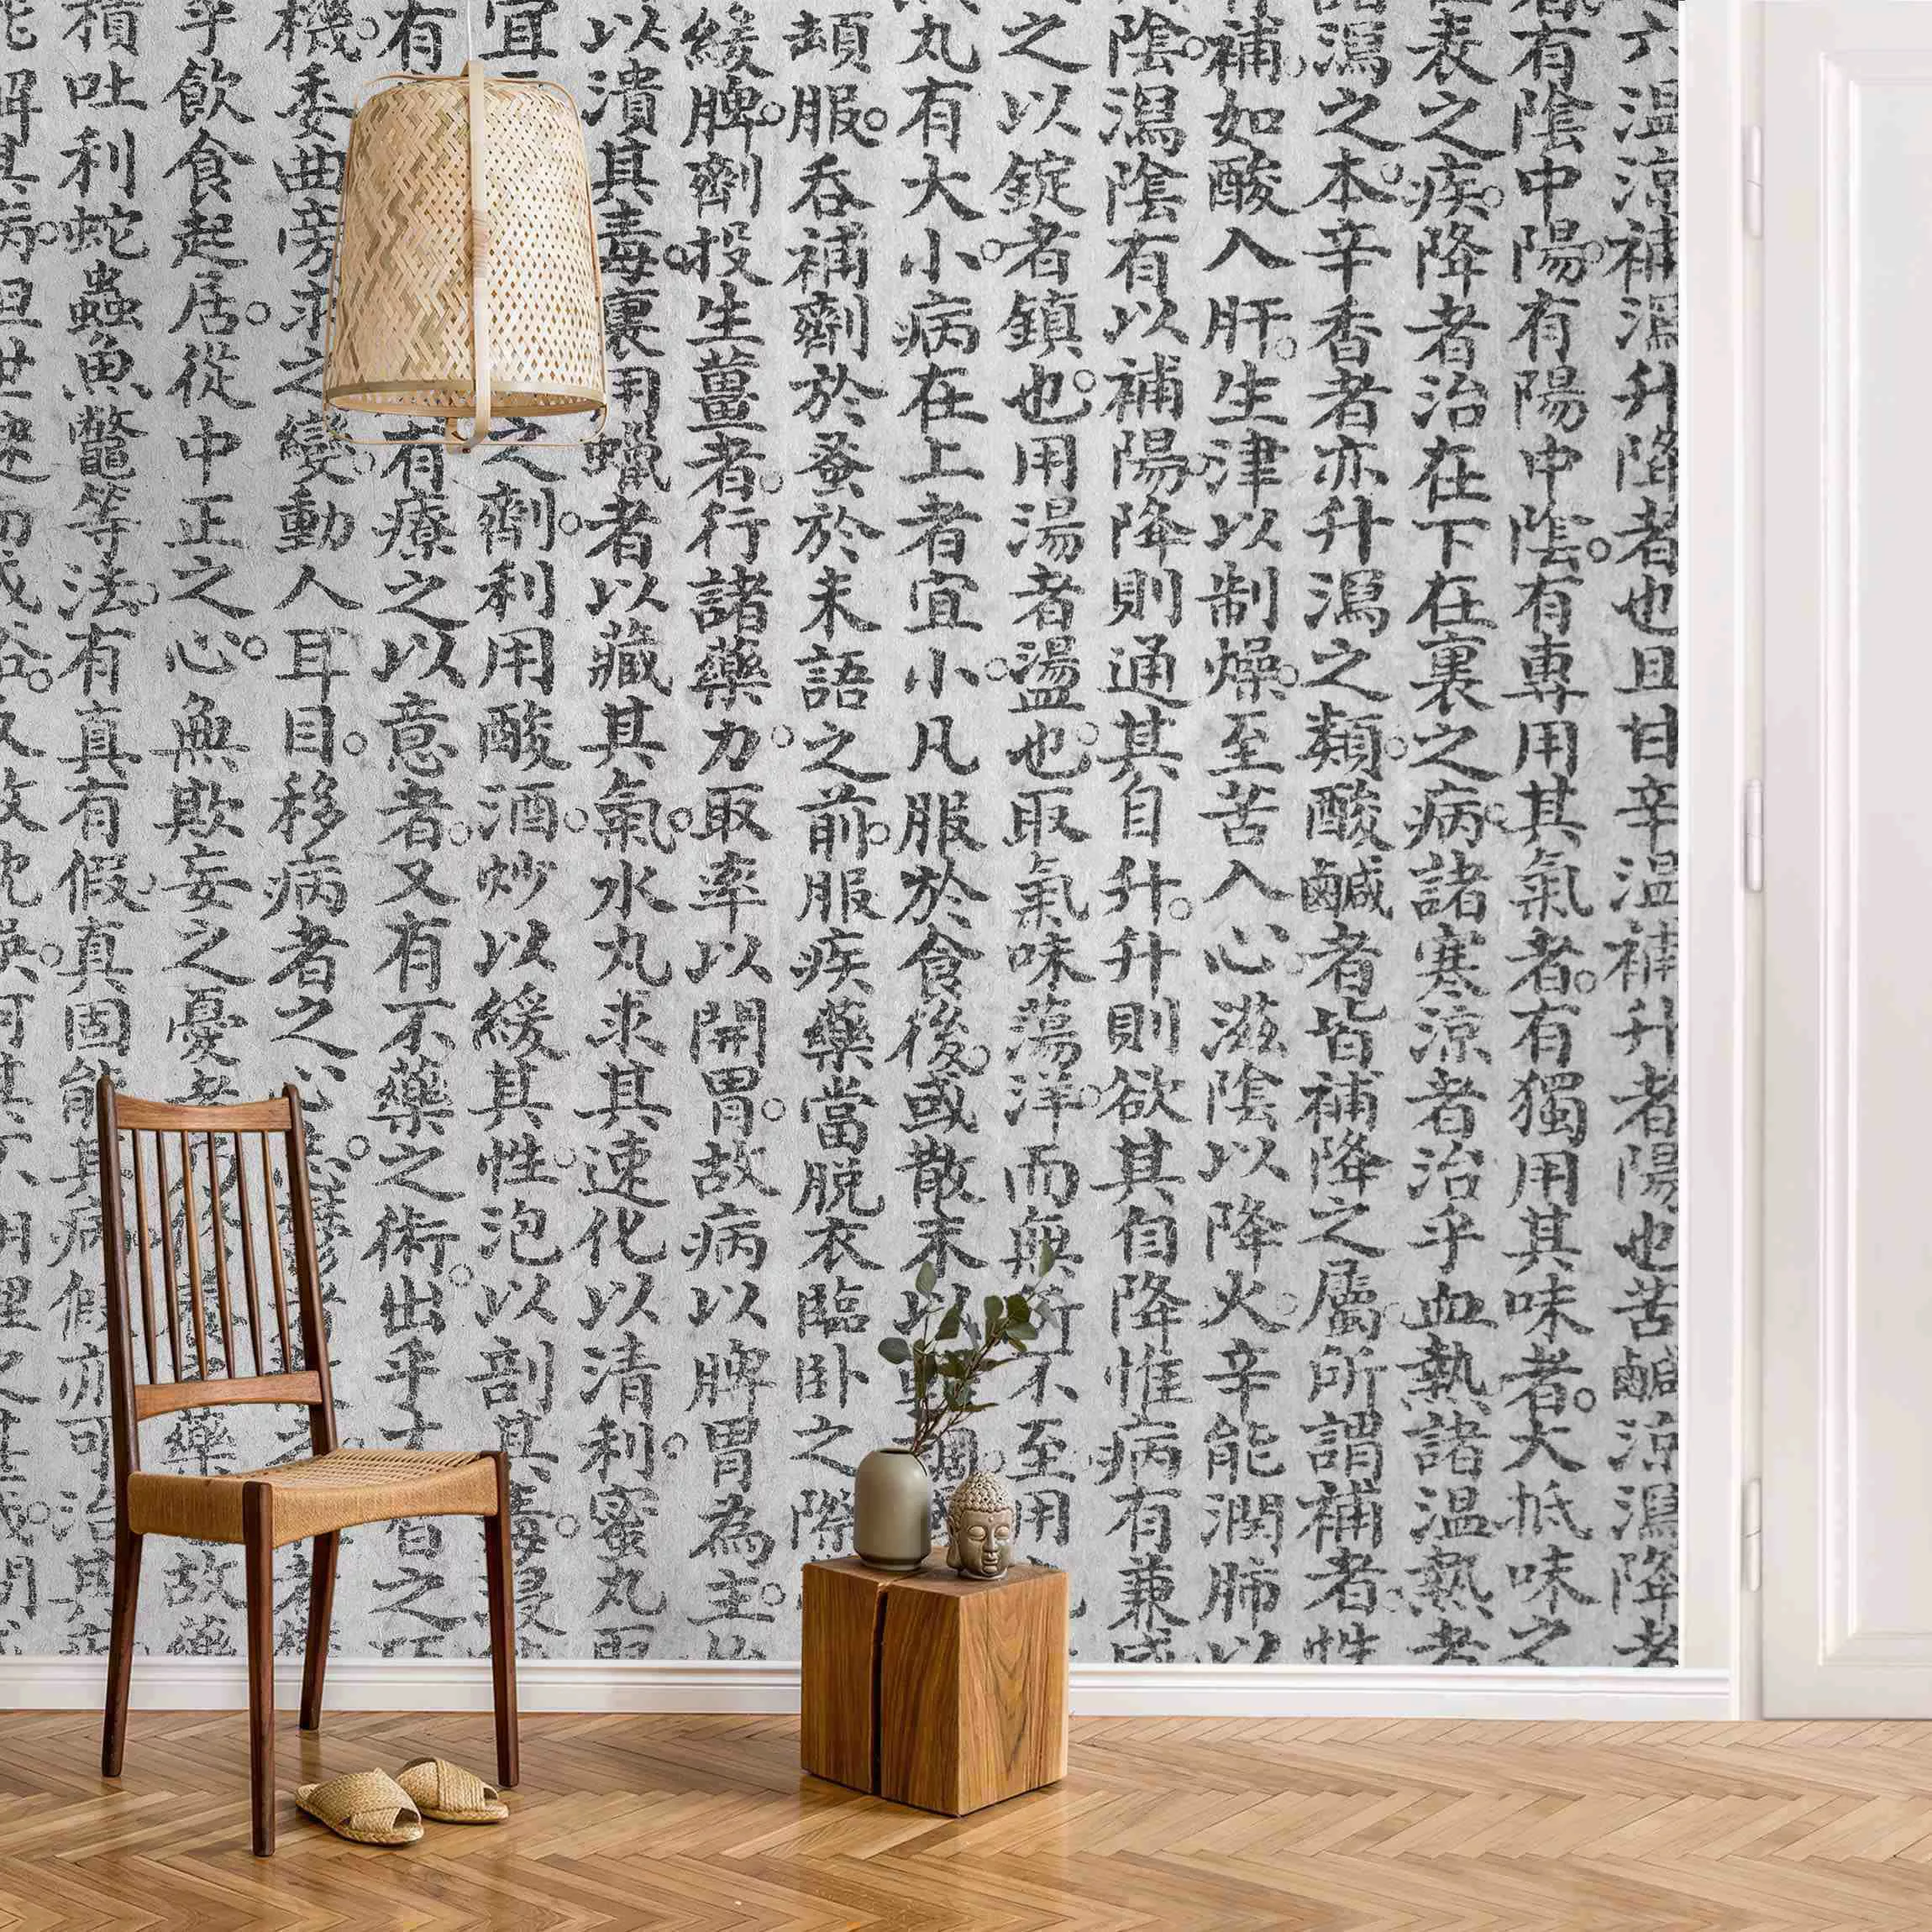 Fototapete Chinesische Schriftzeichen Schwarz-Weiß günstig online kaufen